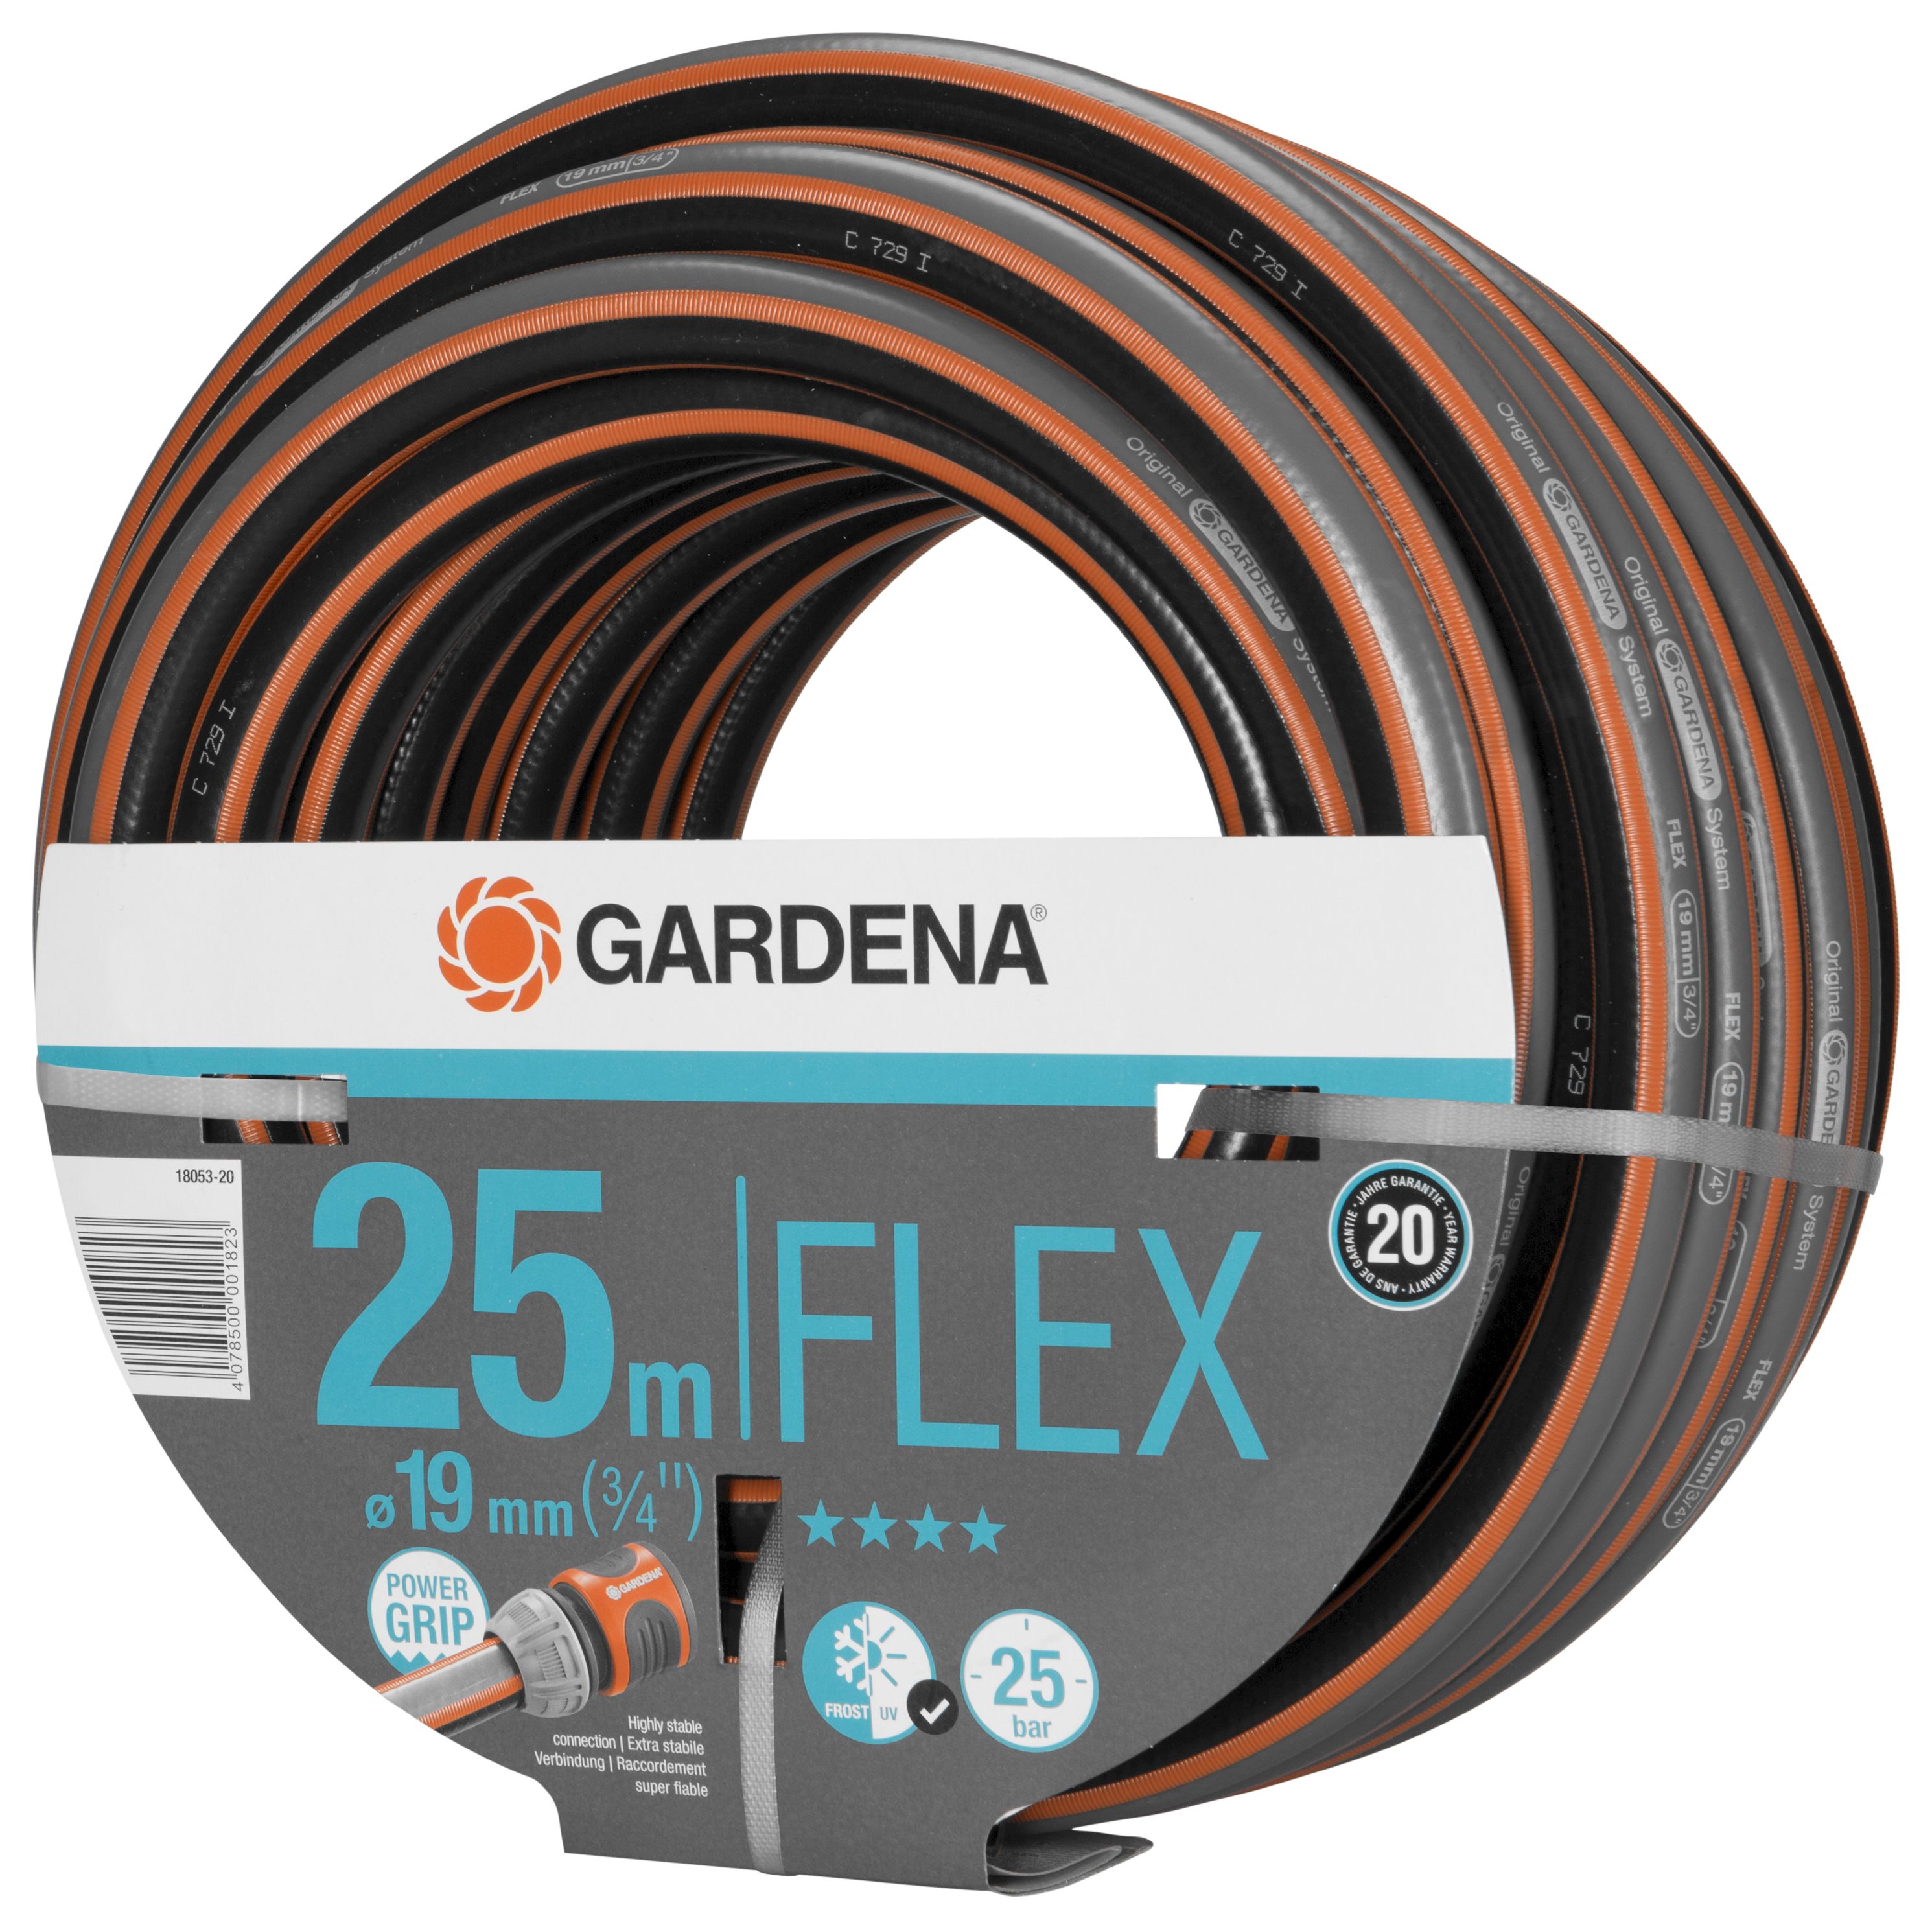 GARDENA Comfort FLEX Schlauch 19 mm (3/4"), 25 m